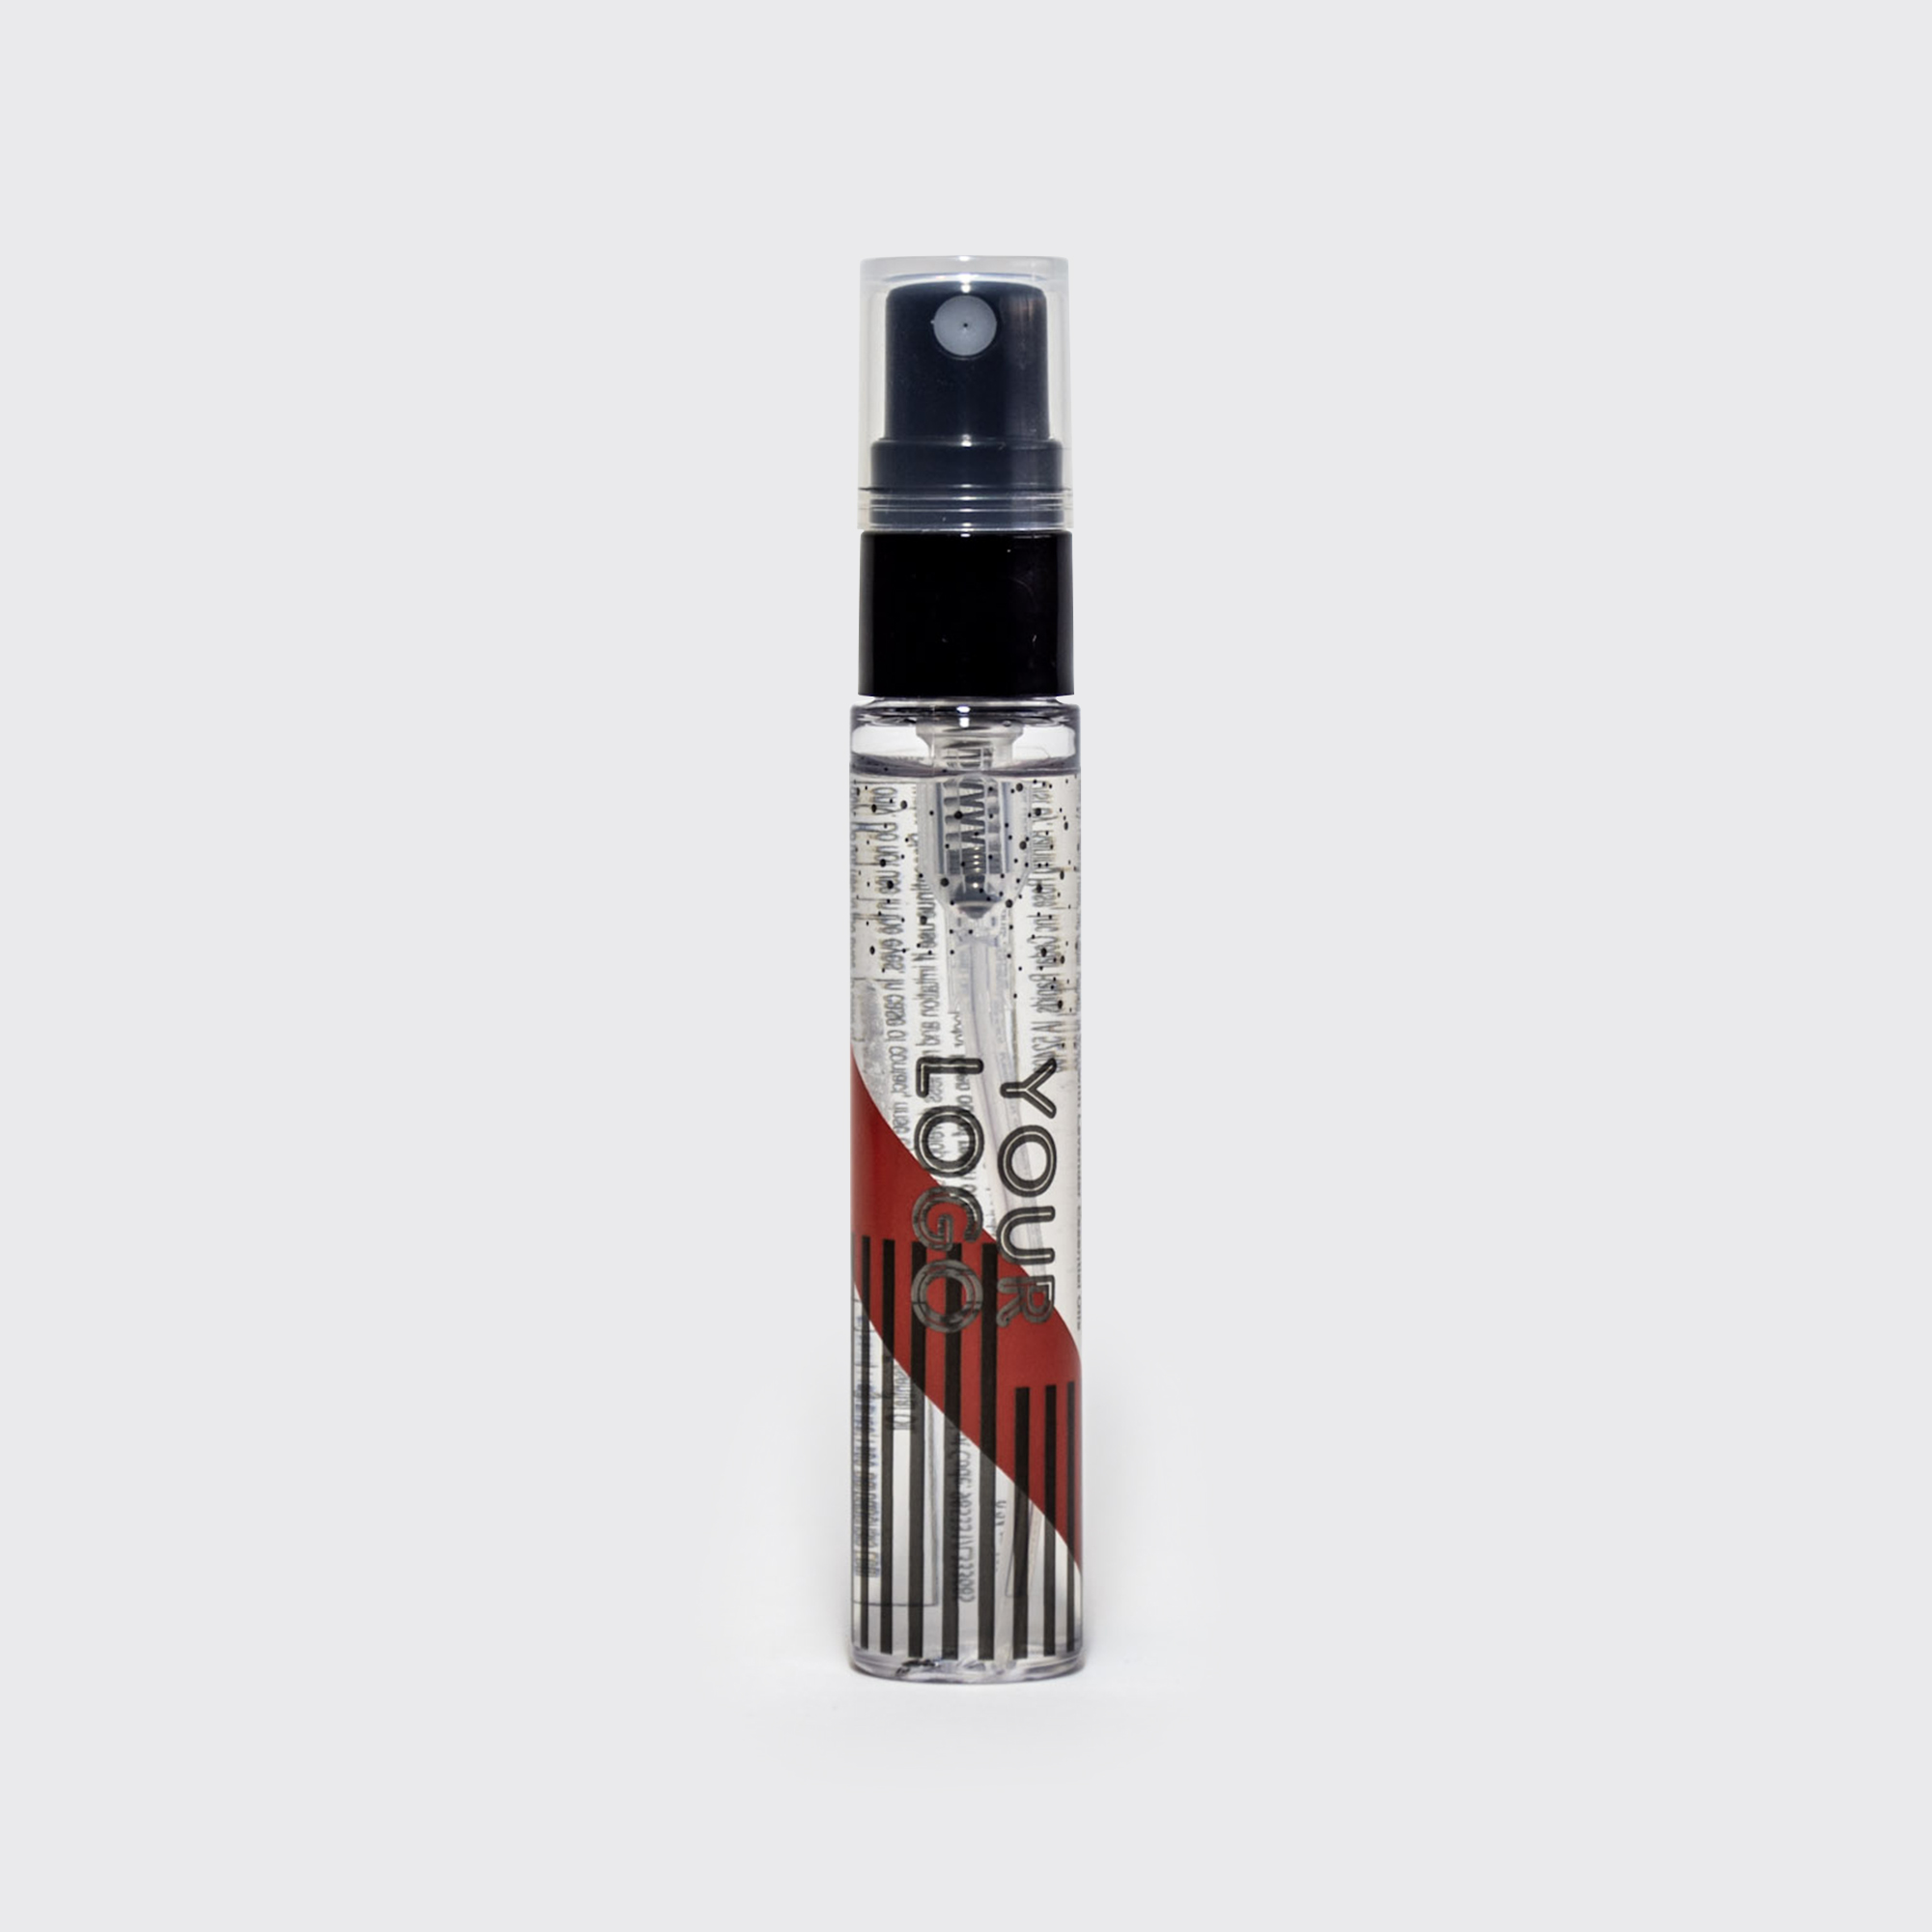 Hand Sanitizer Essential Oil Spray Pen 0.34 fl oz